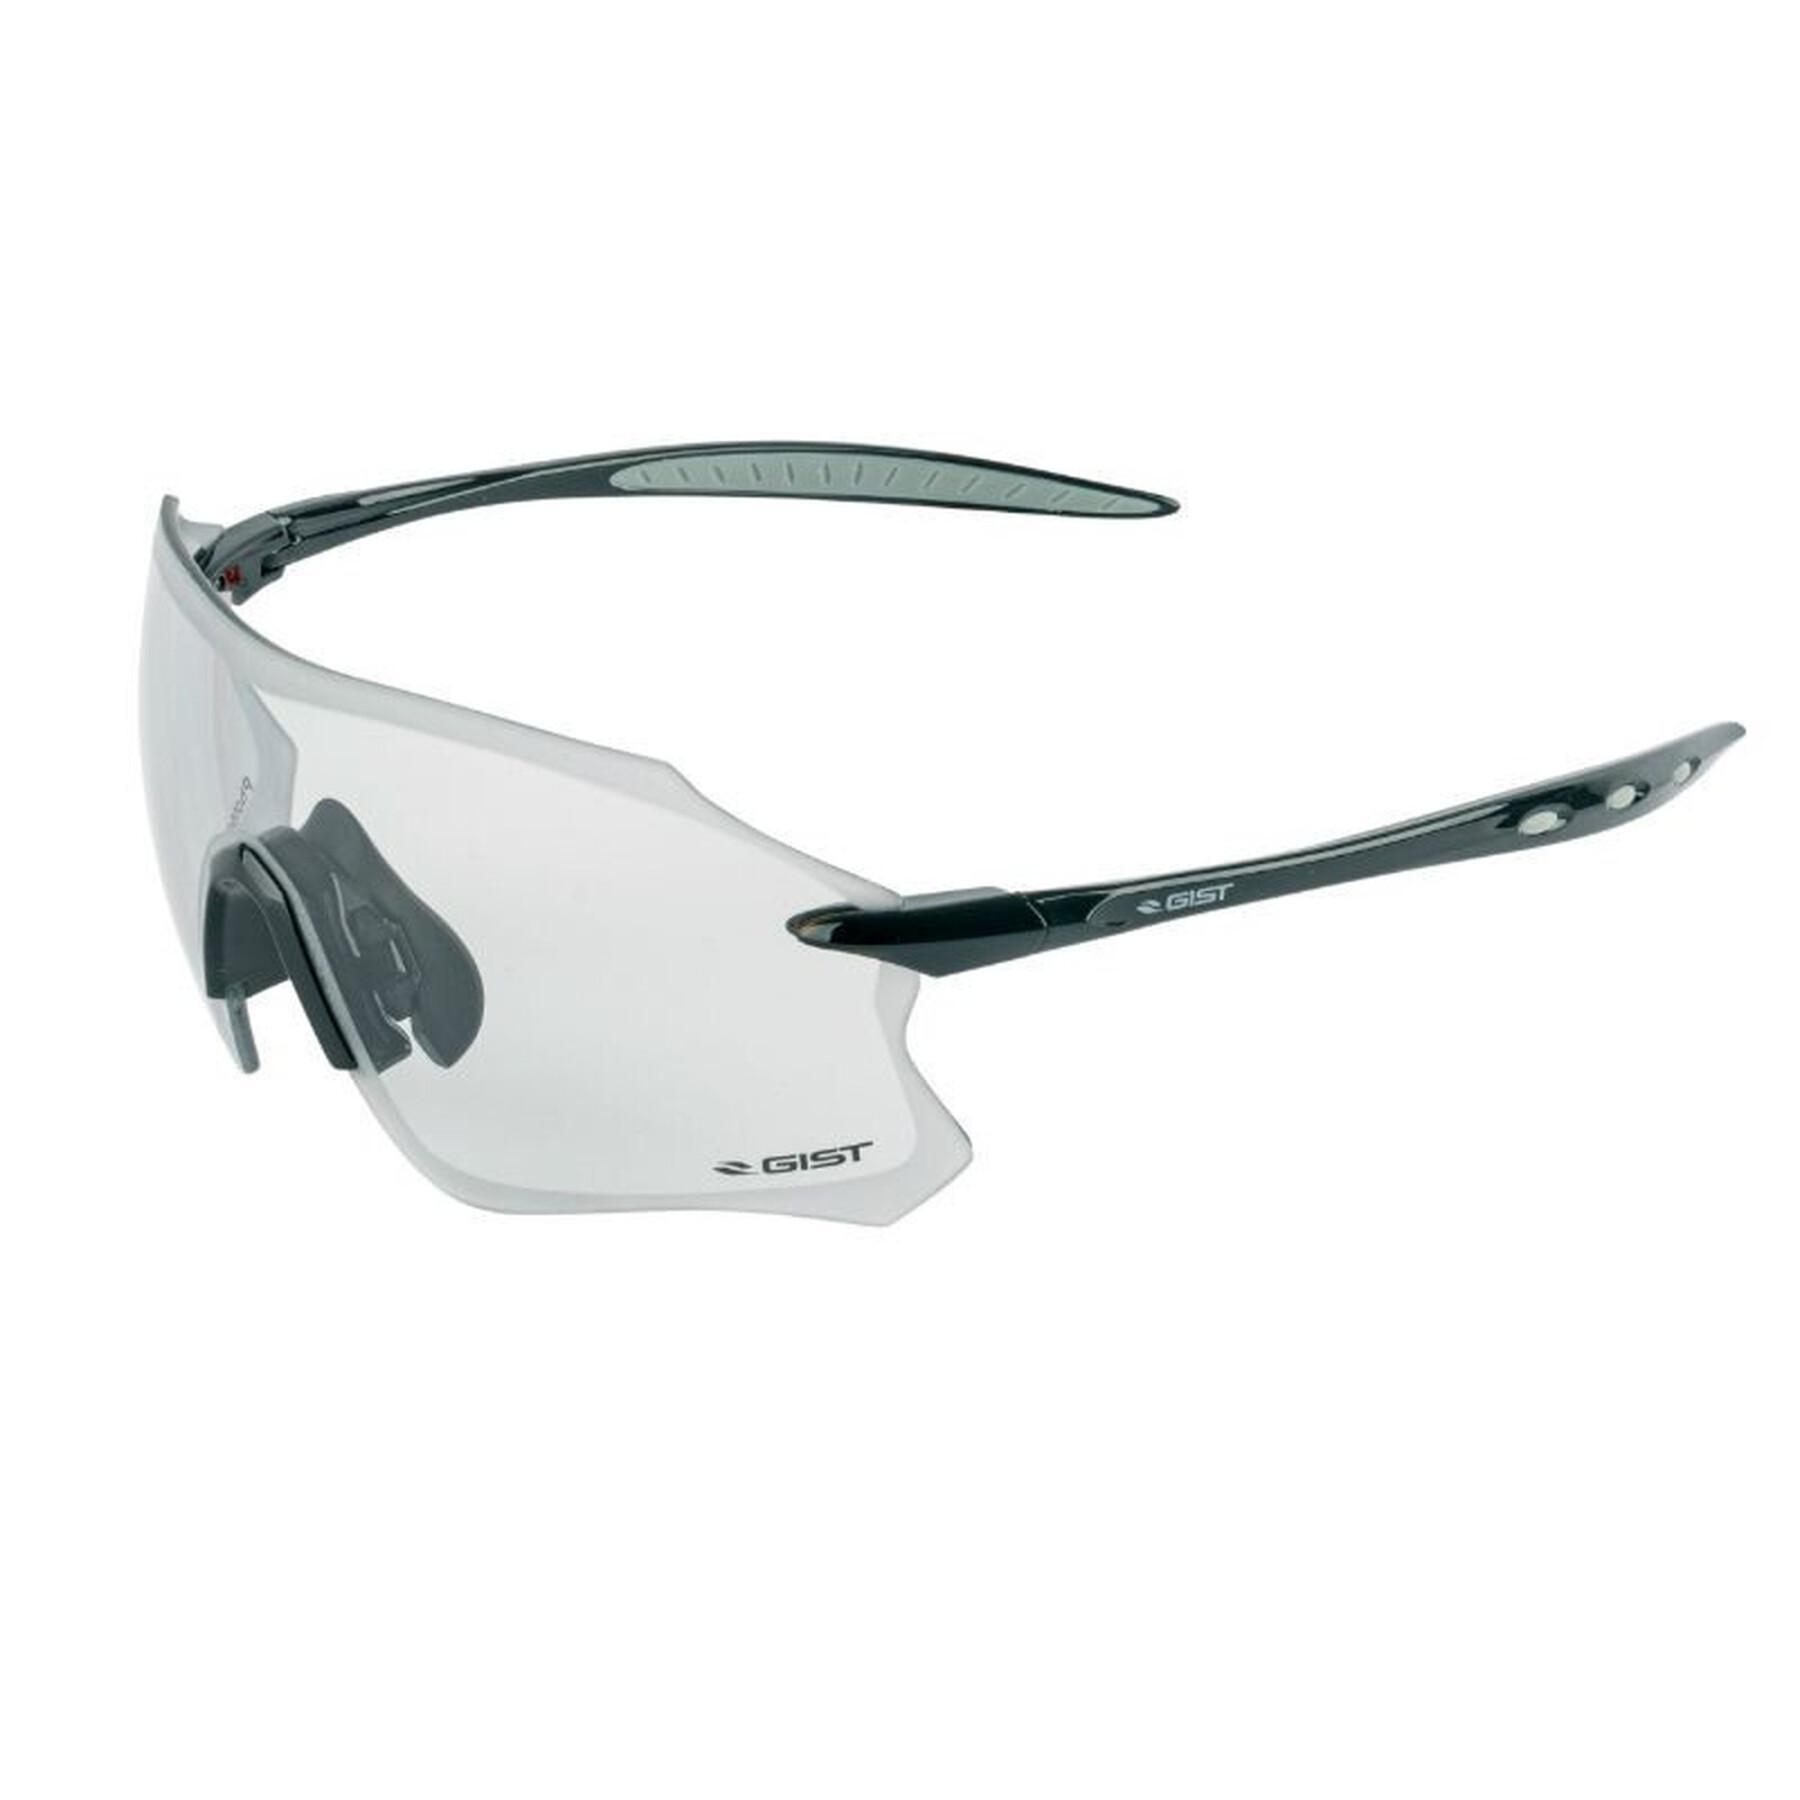 Fahrradbrille Gestell photochromatische Gläser Gläser, die sich automatisch an die Helligkeit anpassen- ultraleicht Gist Pack